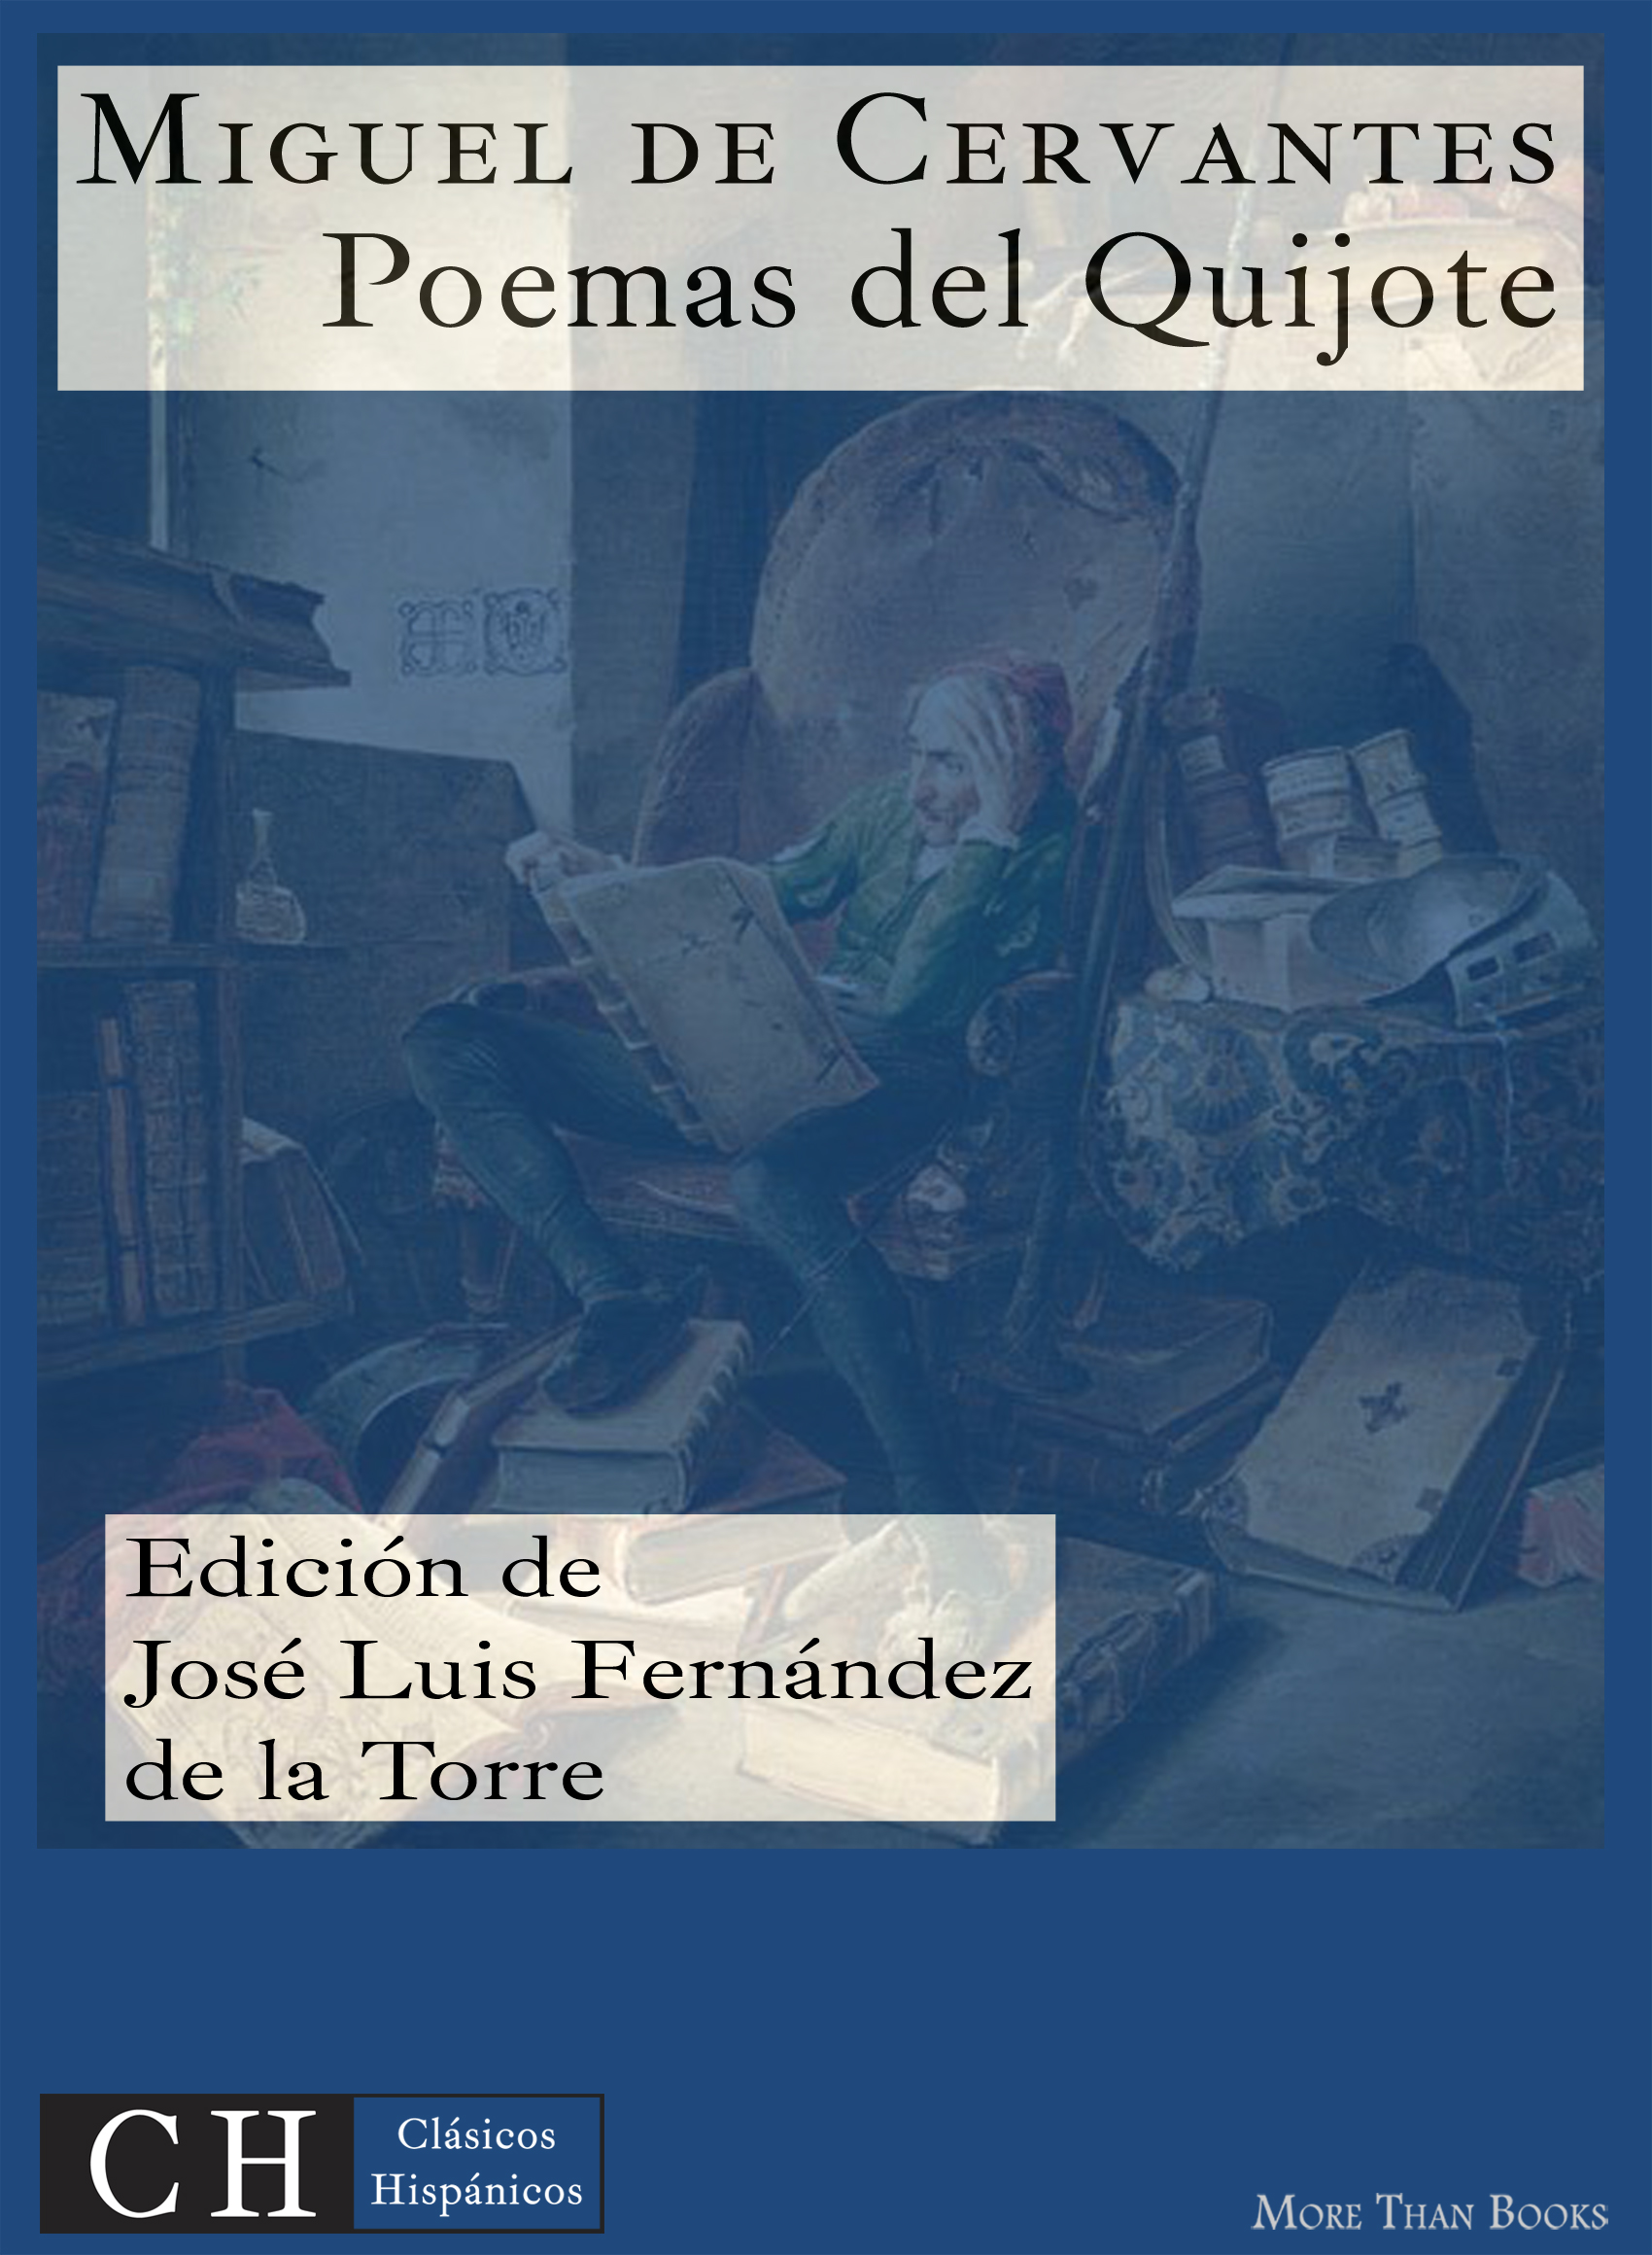 Imagen de portada del libro Poesías VI: poemas en El Quijote